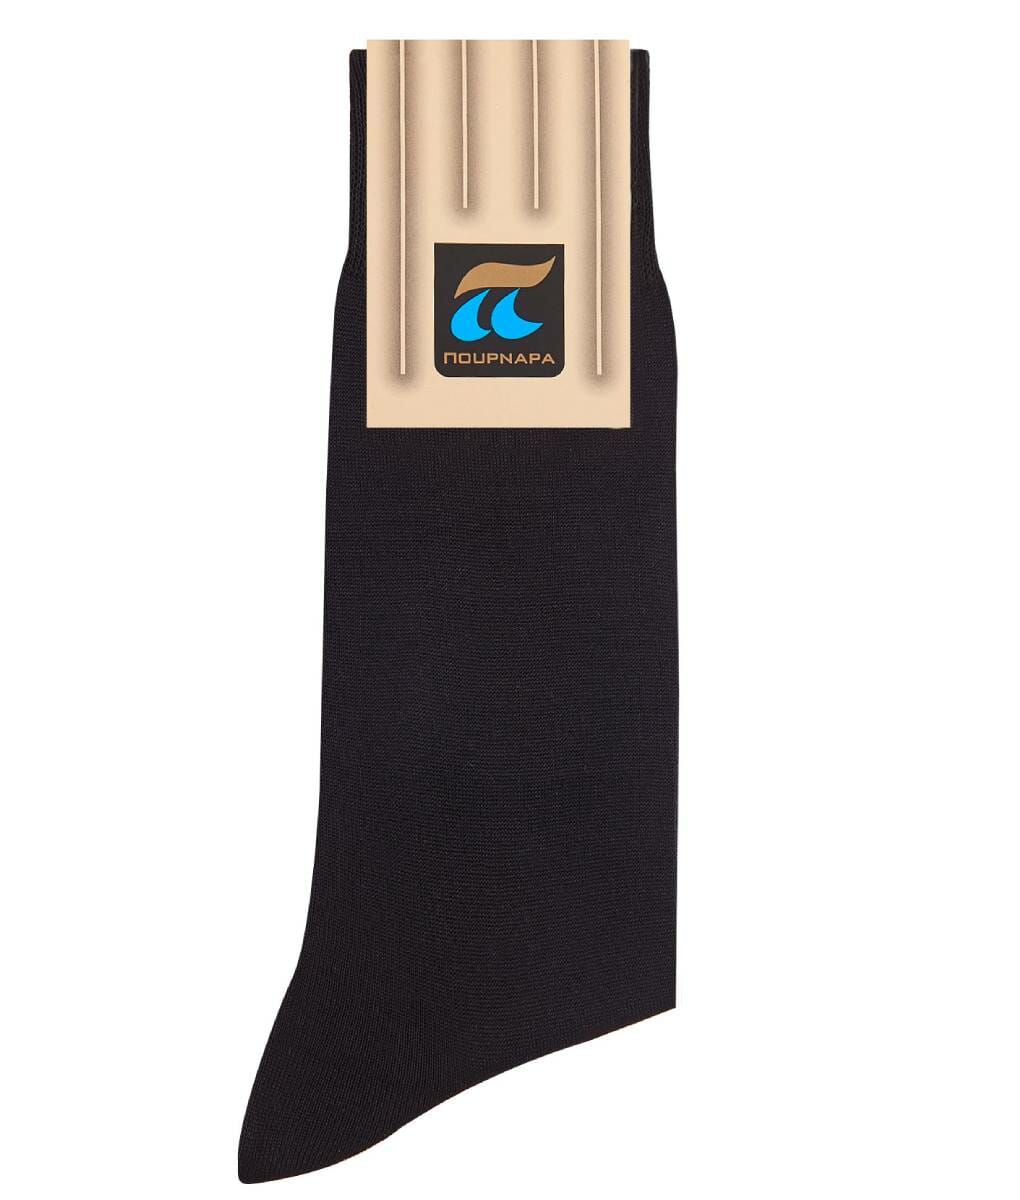 Ανδρική μαύρη βαμβακερή κάλτσα Πουρνάρας 1+1 ΔΩΡΟ Κωδ. 101-19 P101 Μαύρο